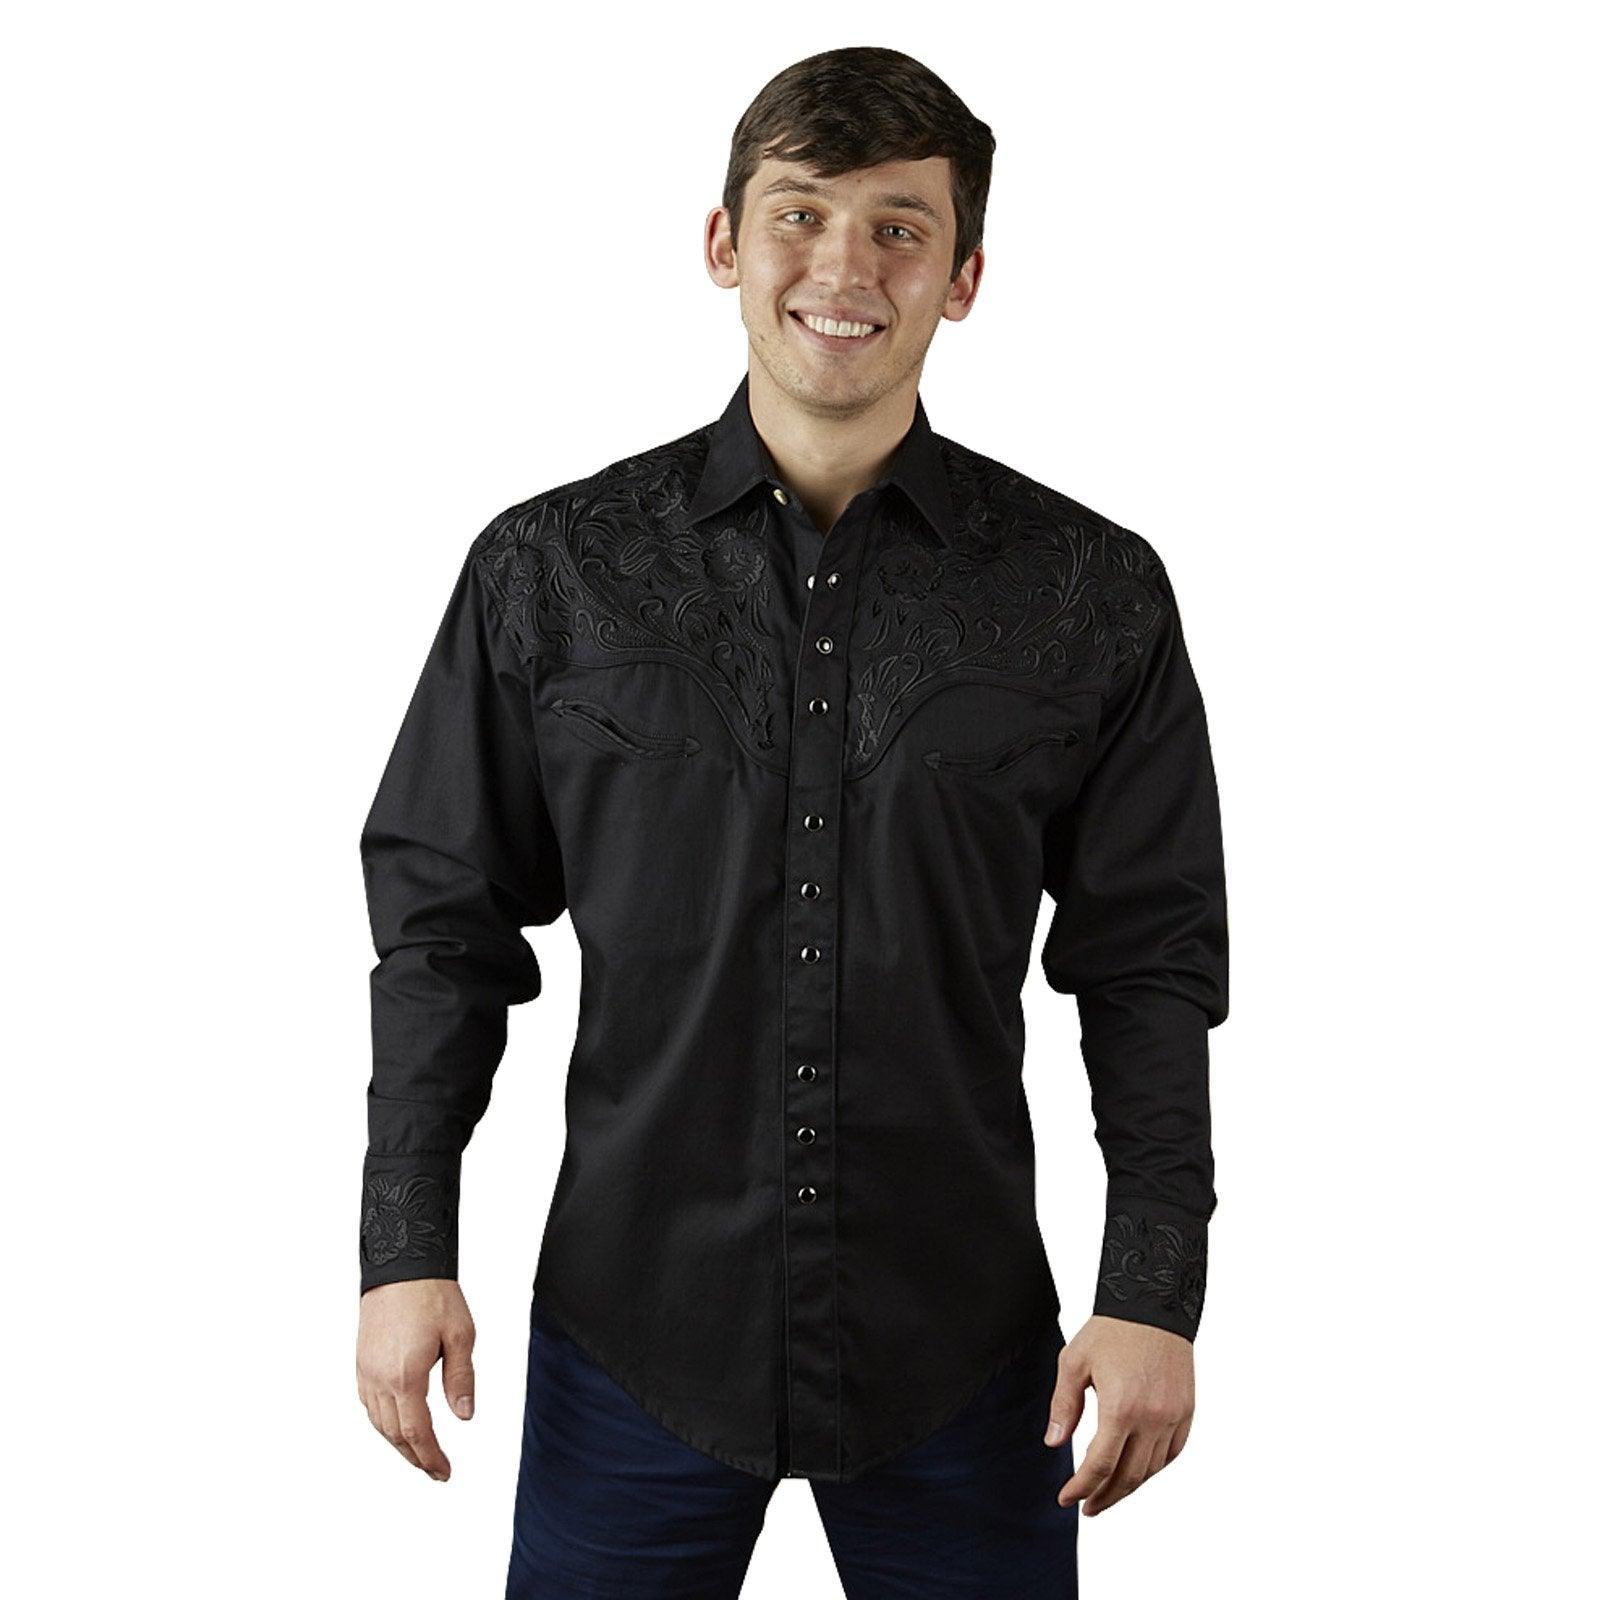 Men's Vintage Tooling Embroidered Black-on-Black Western Shirt - Flyclothing LLC